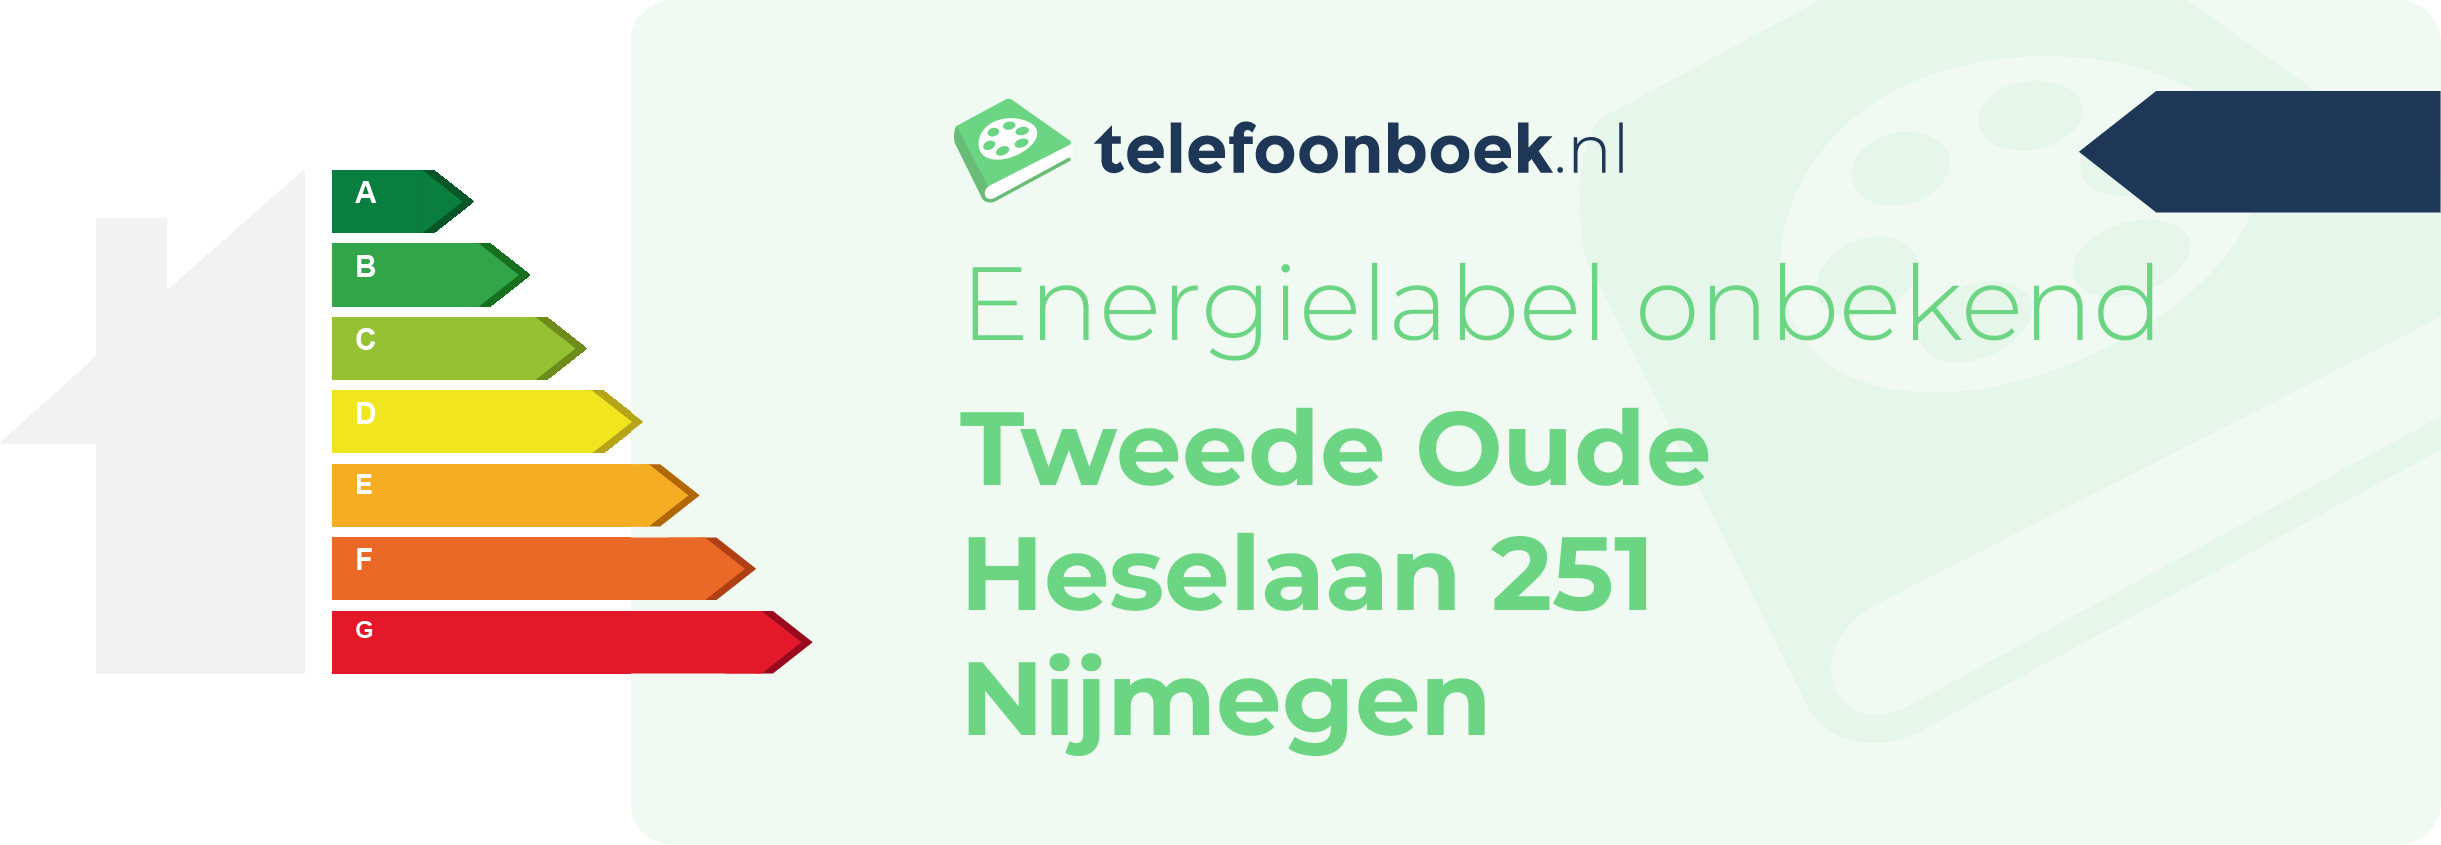 Energielabel Tweede Oude Heselaan 251 Nijmegen